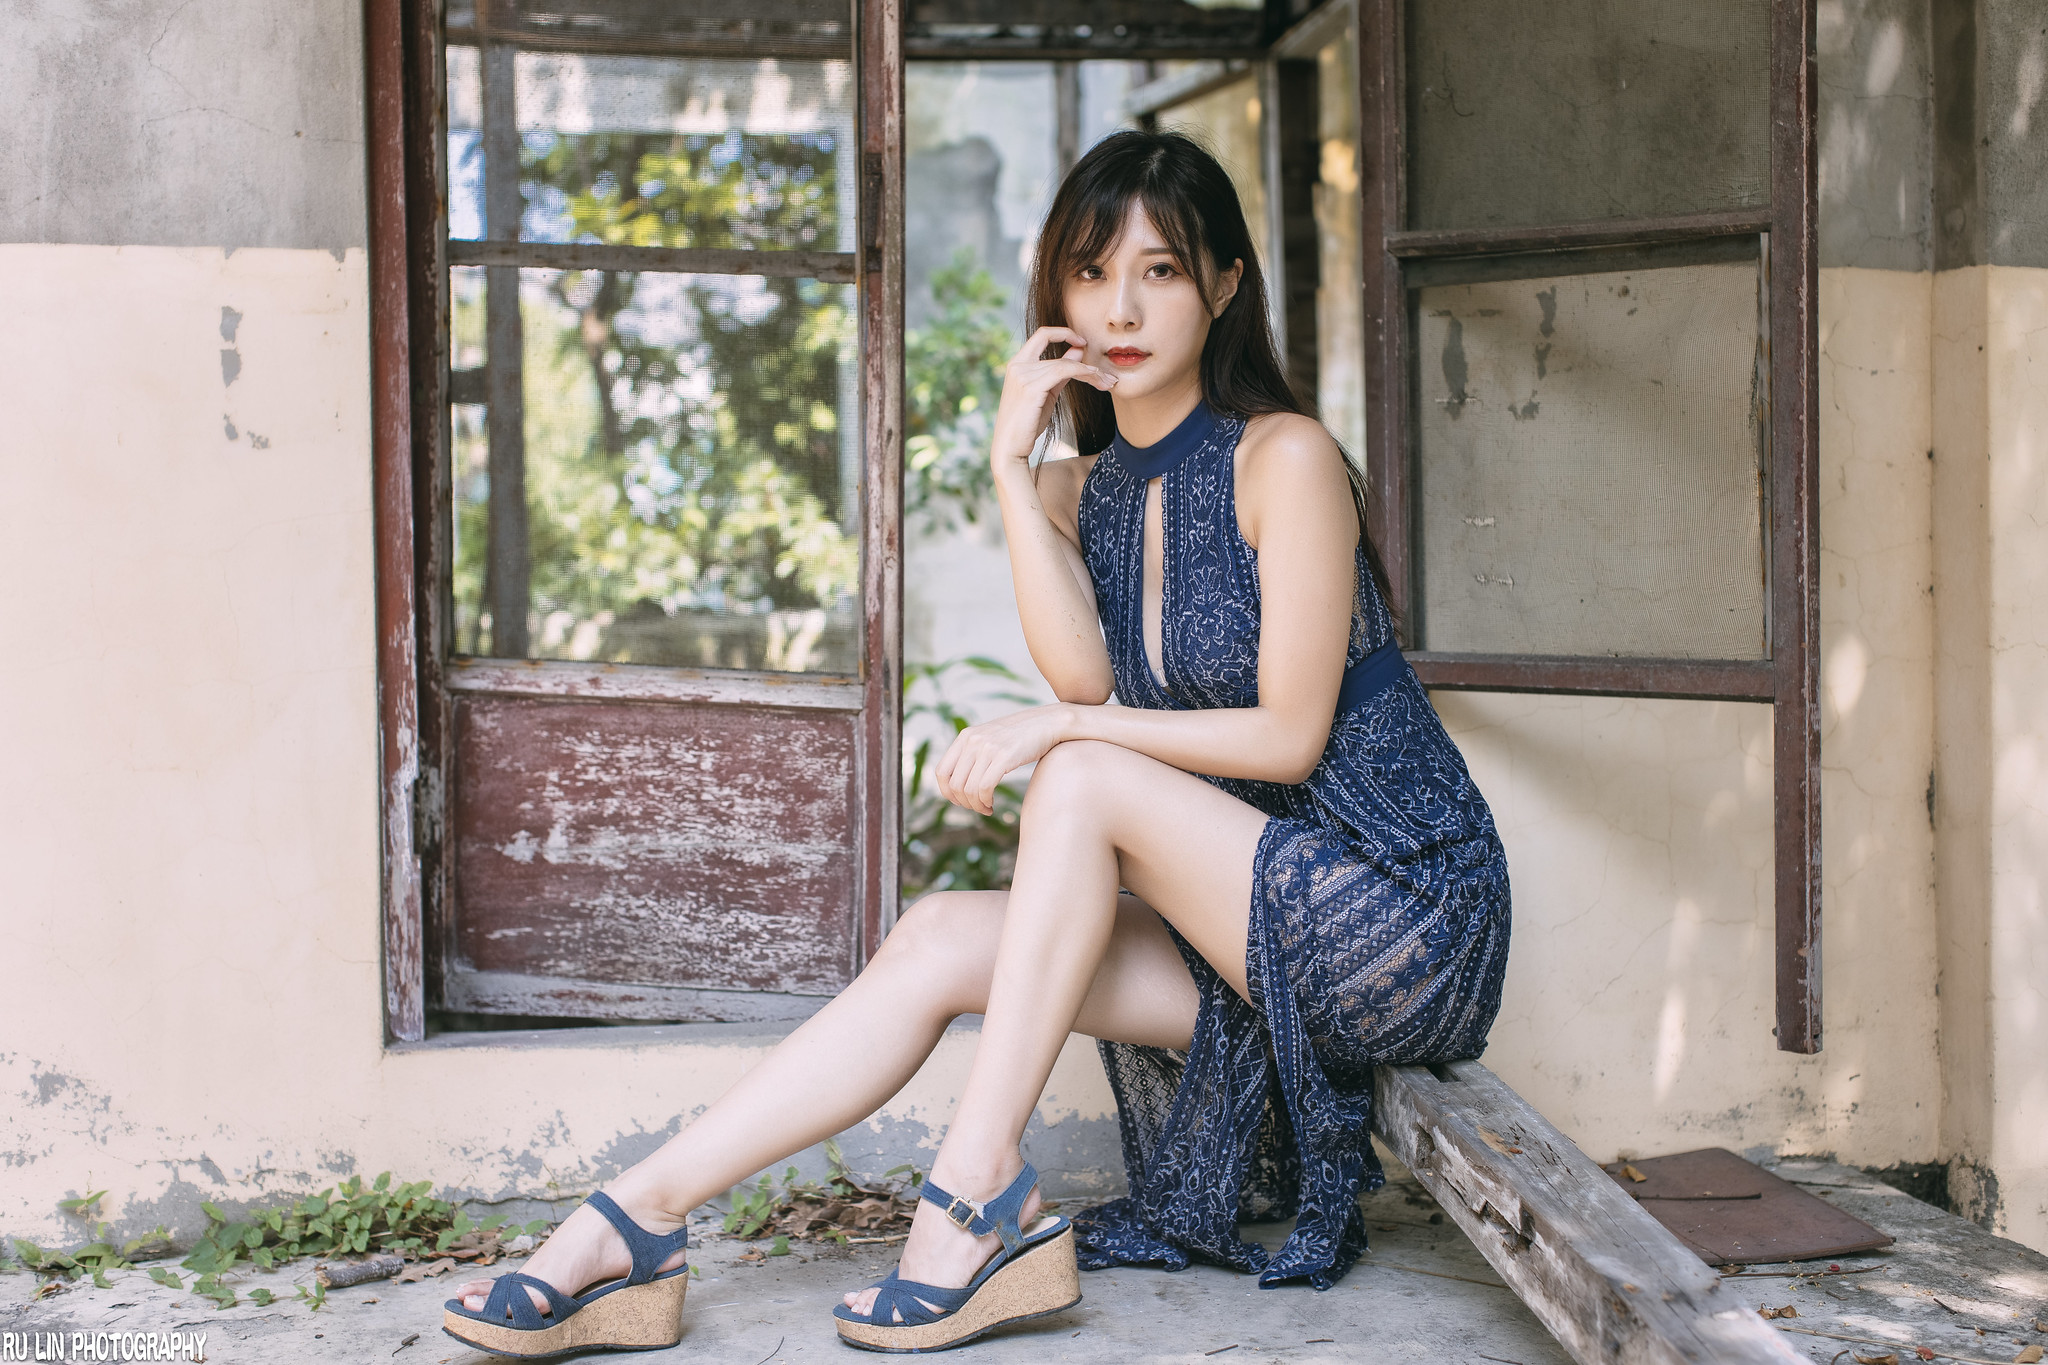 Ru Lin Women Asian Brunette Long Hair Straight Hair Makeup Dress Blue Clothing Legs Window Ruins 2048x1365